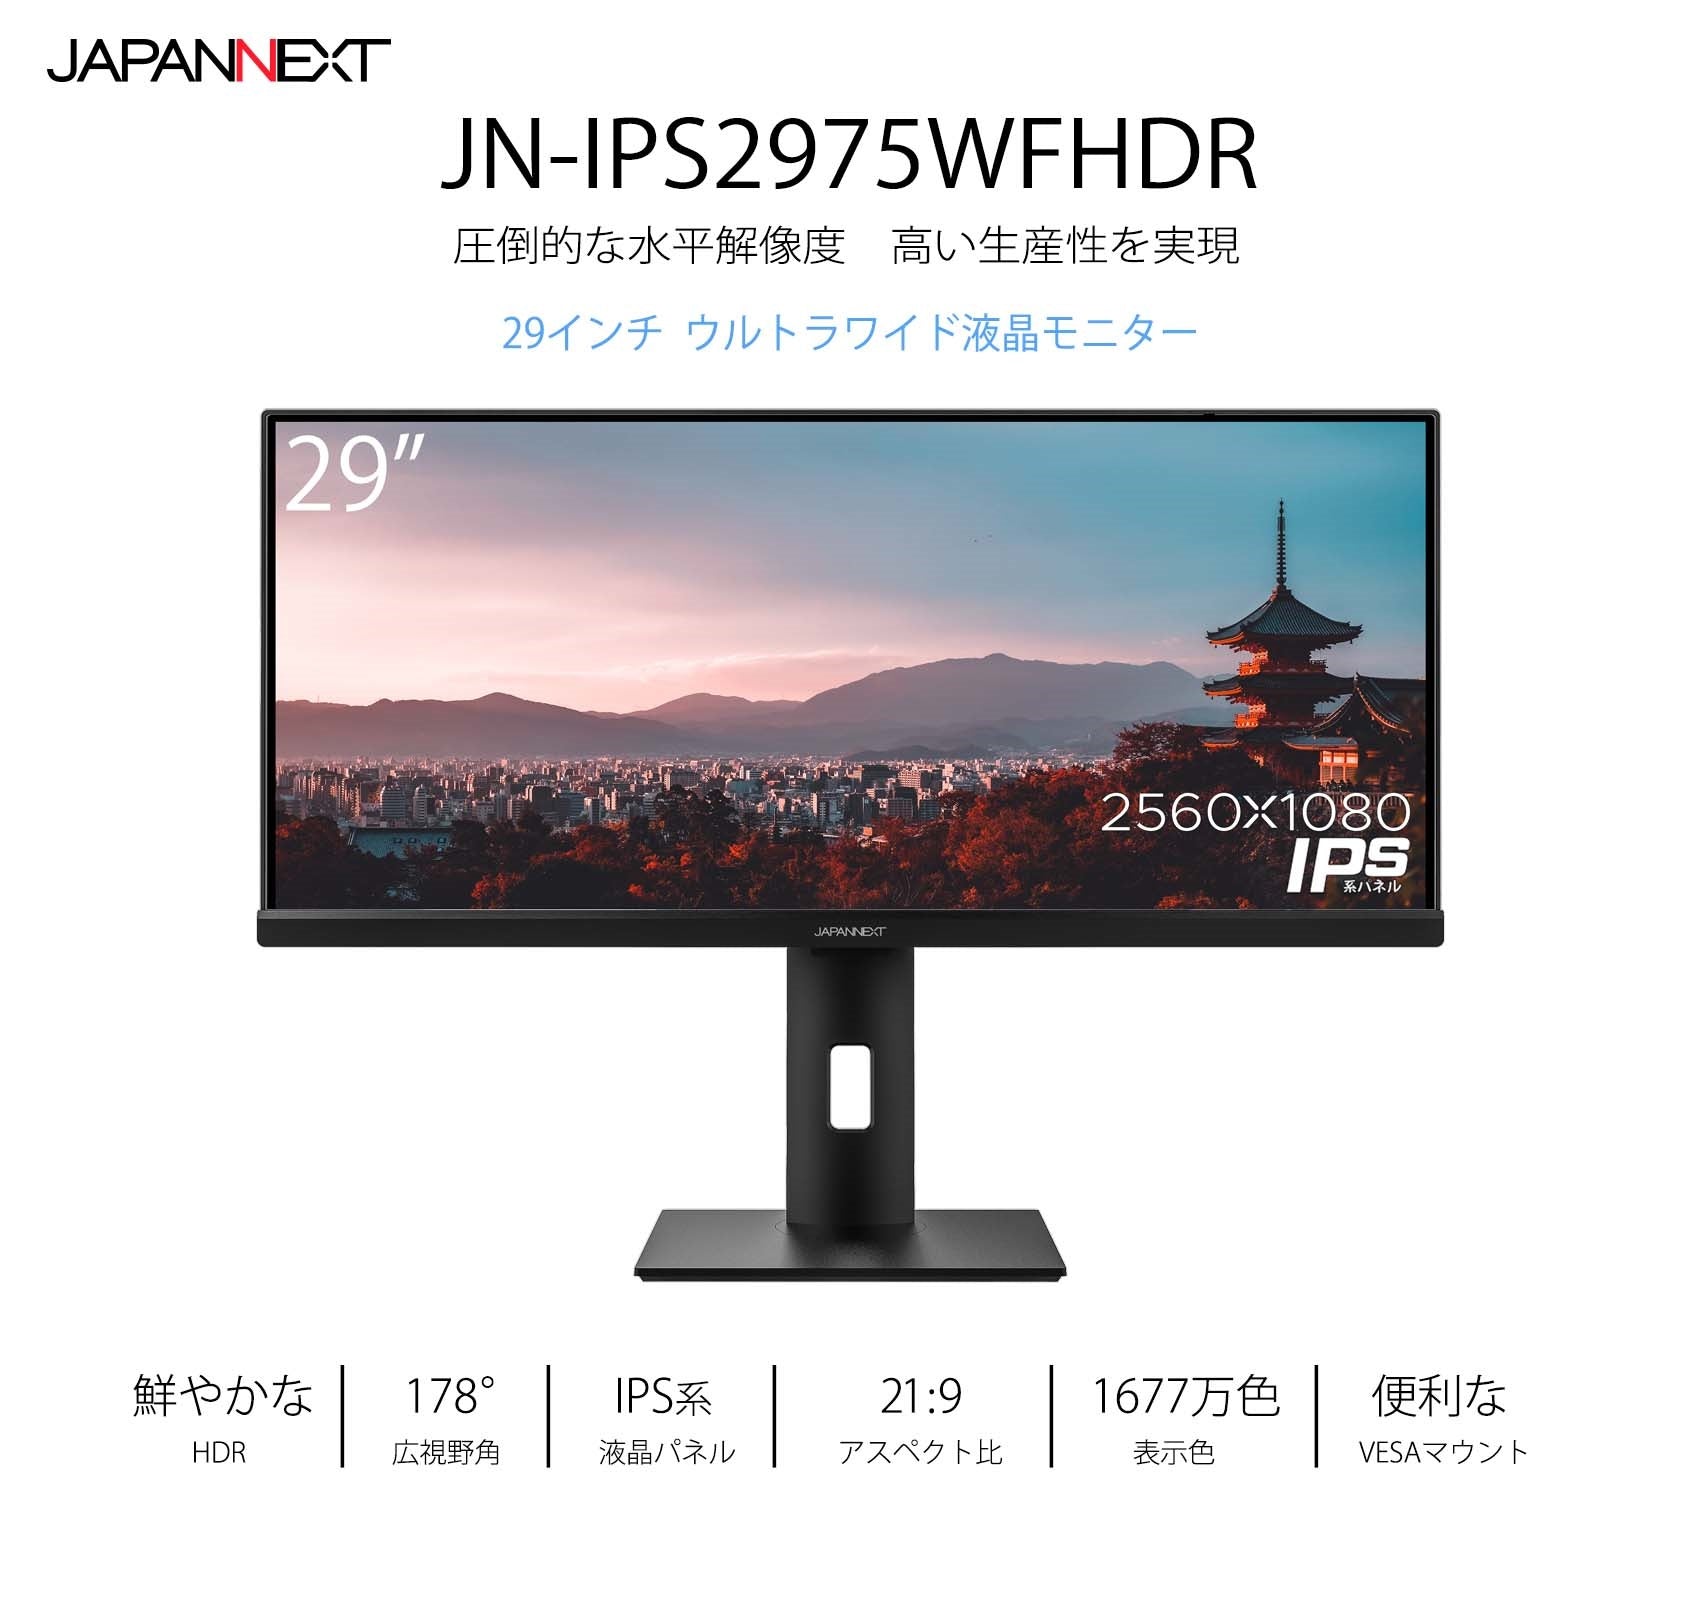 JAPANNEXT 29インチ ワイドFHD(2560 x 1080) モニター